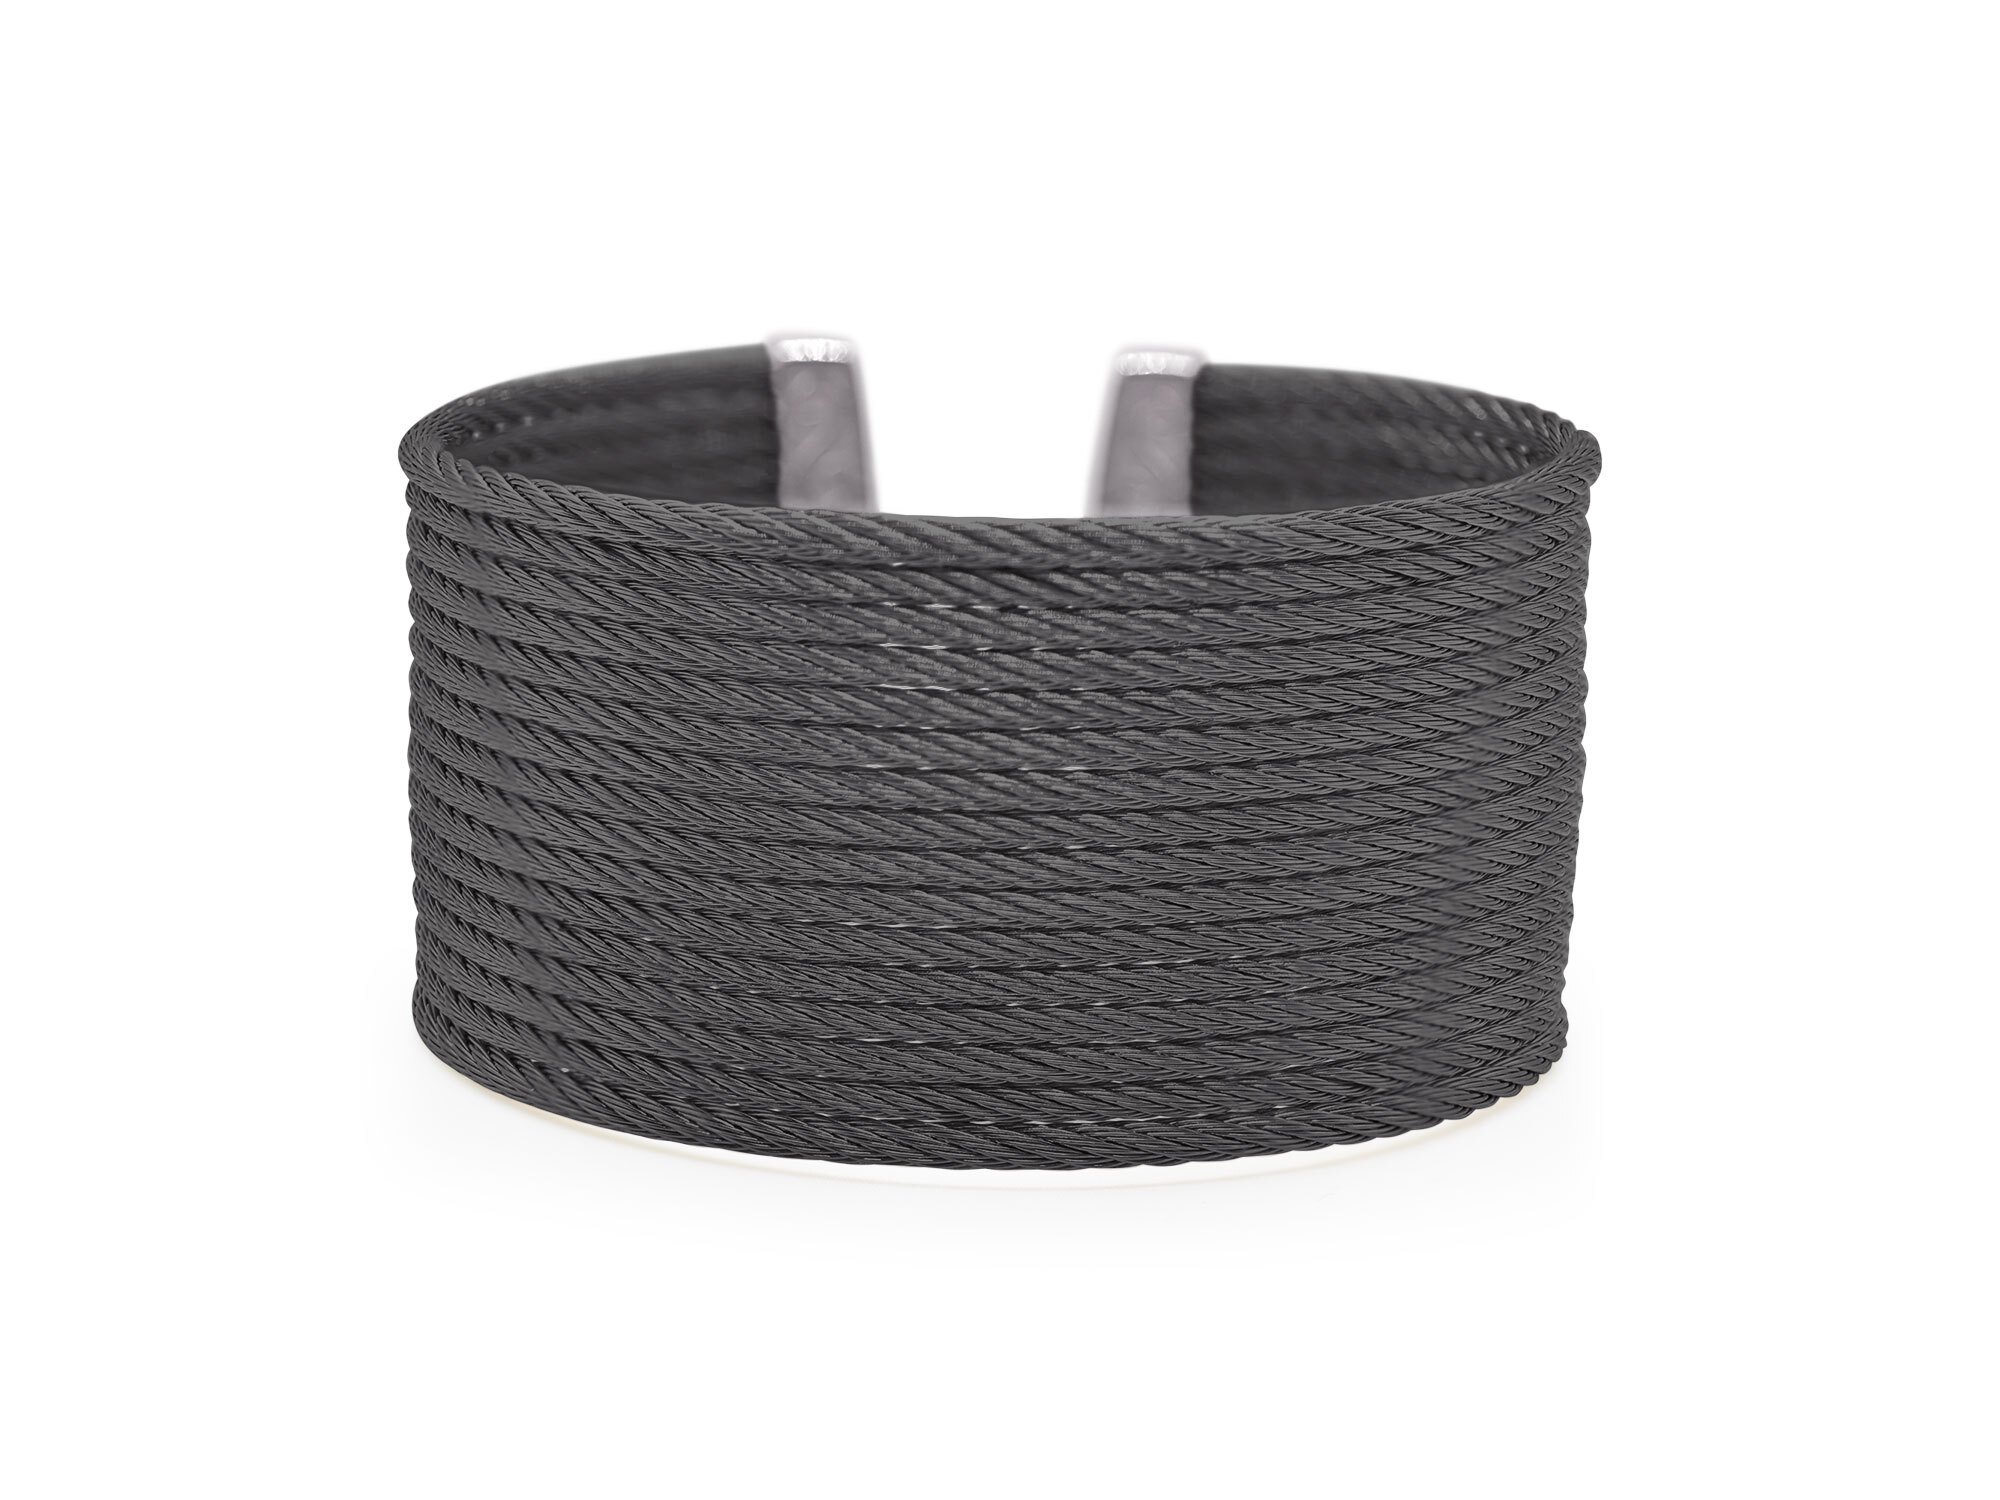 ALOR Black Cable Cuff Essentials 16-Row Cuff